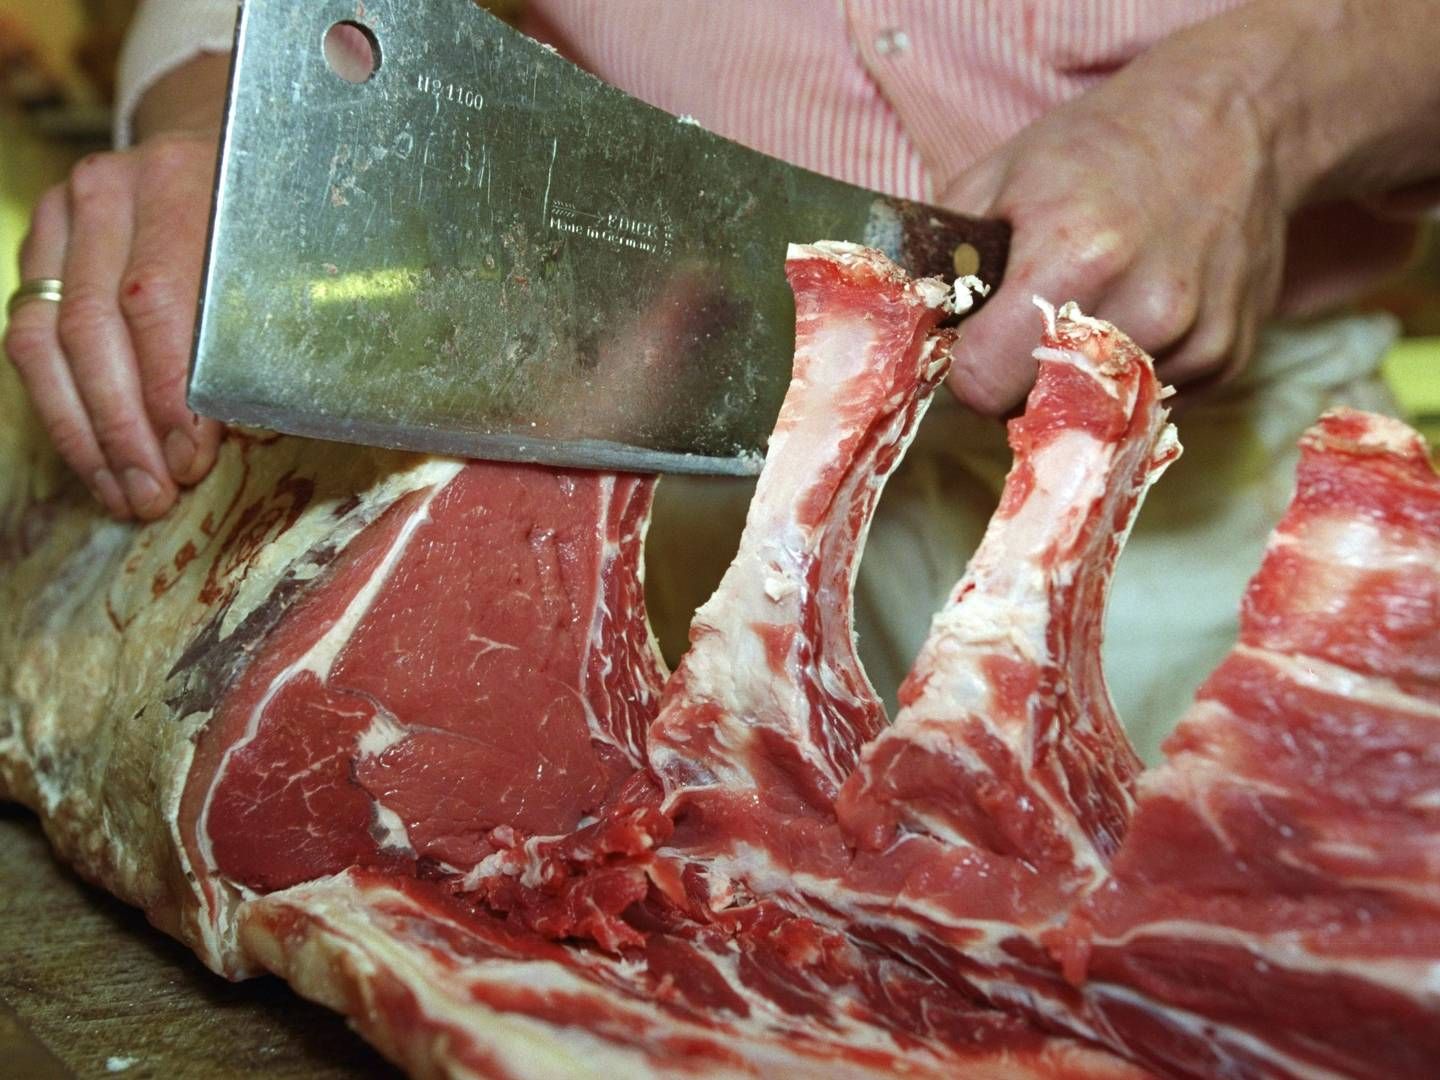 Salget af oksekød i Nordamerika er faldet markant ifølge Bloomberg News. | Foto: Morten Langkilde